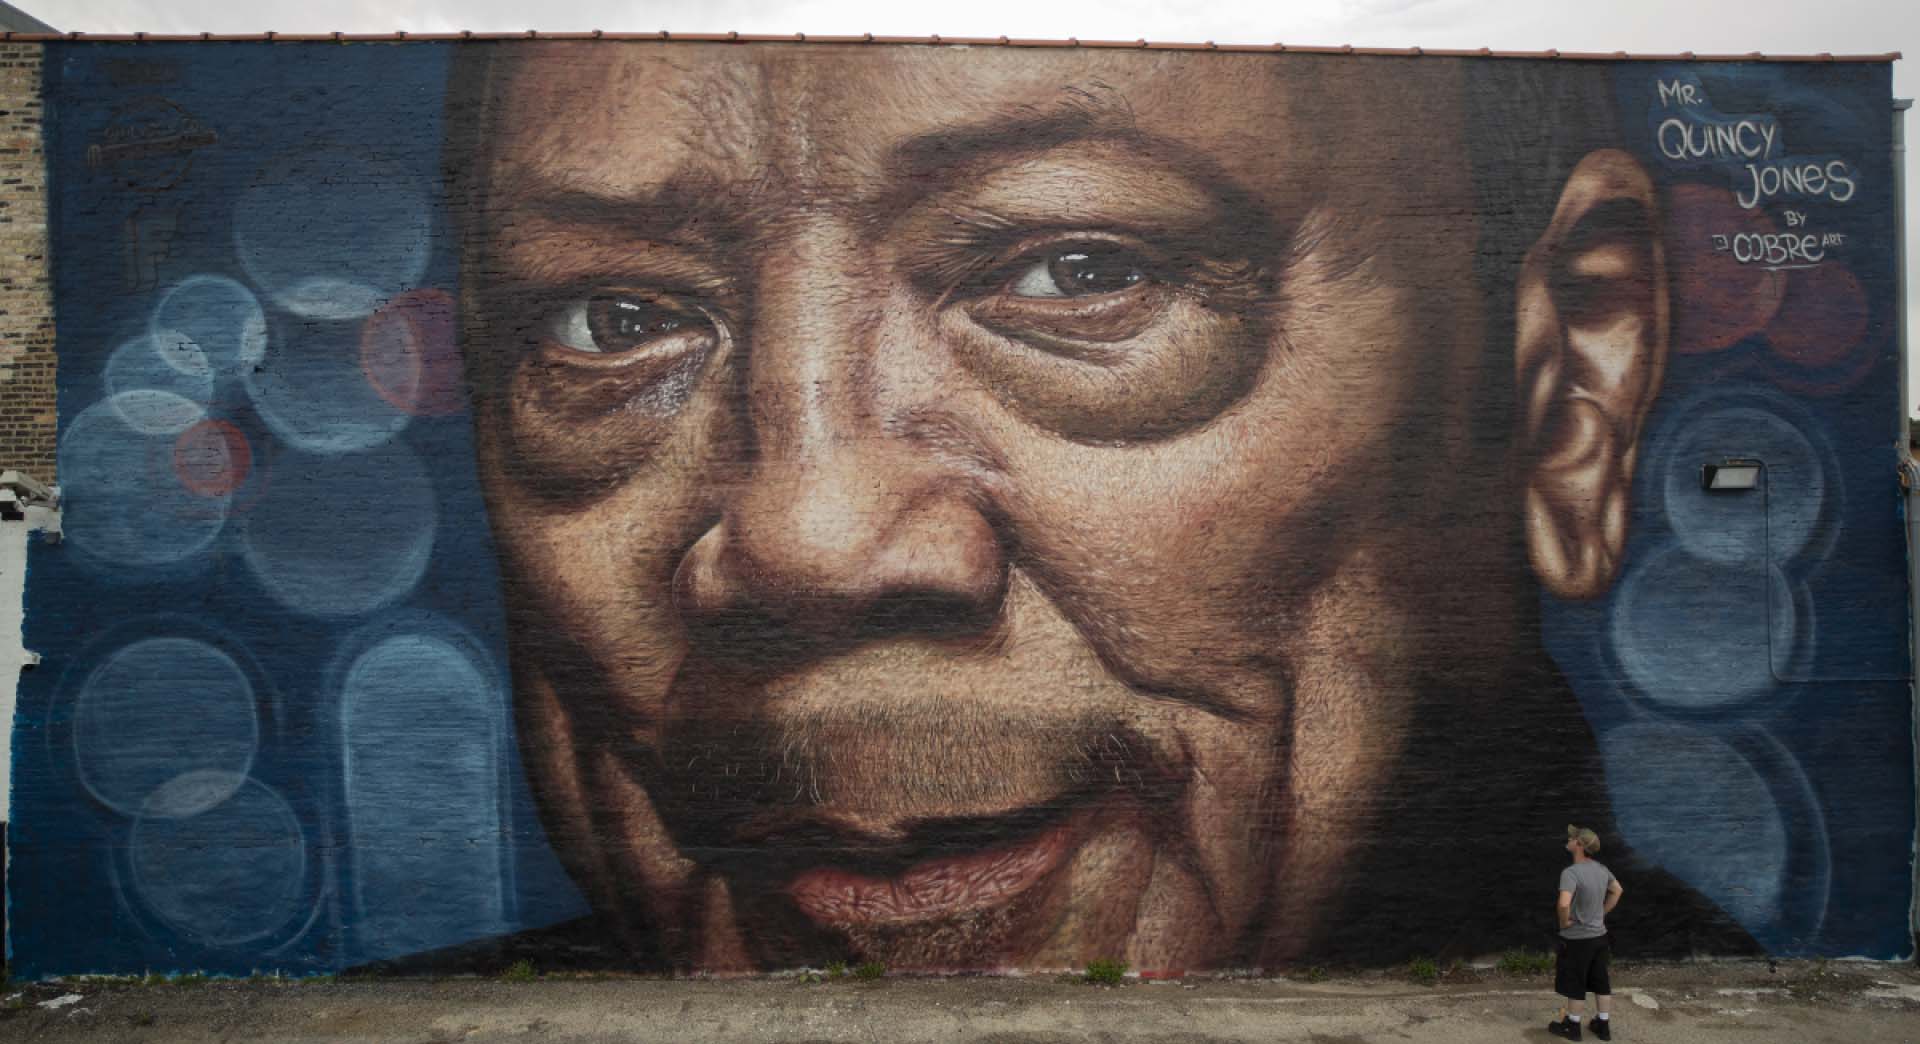 Quincy Jones mural